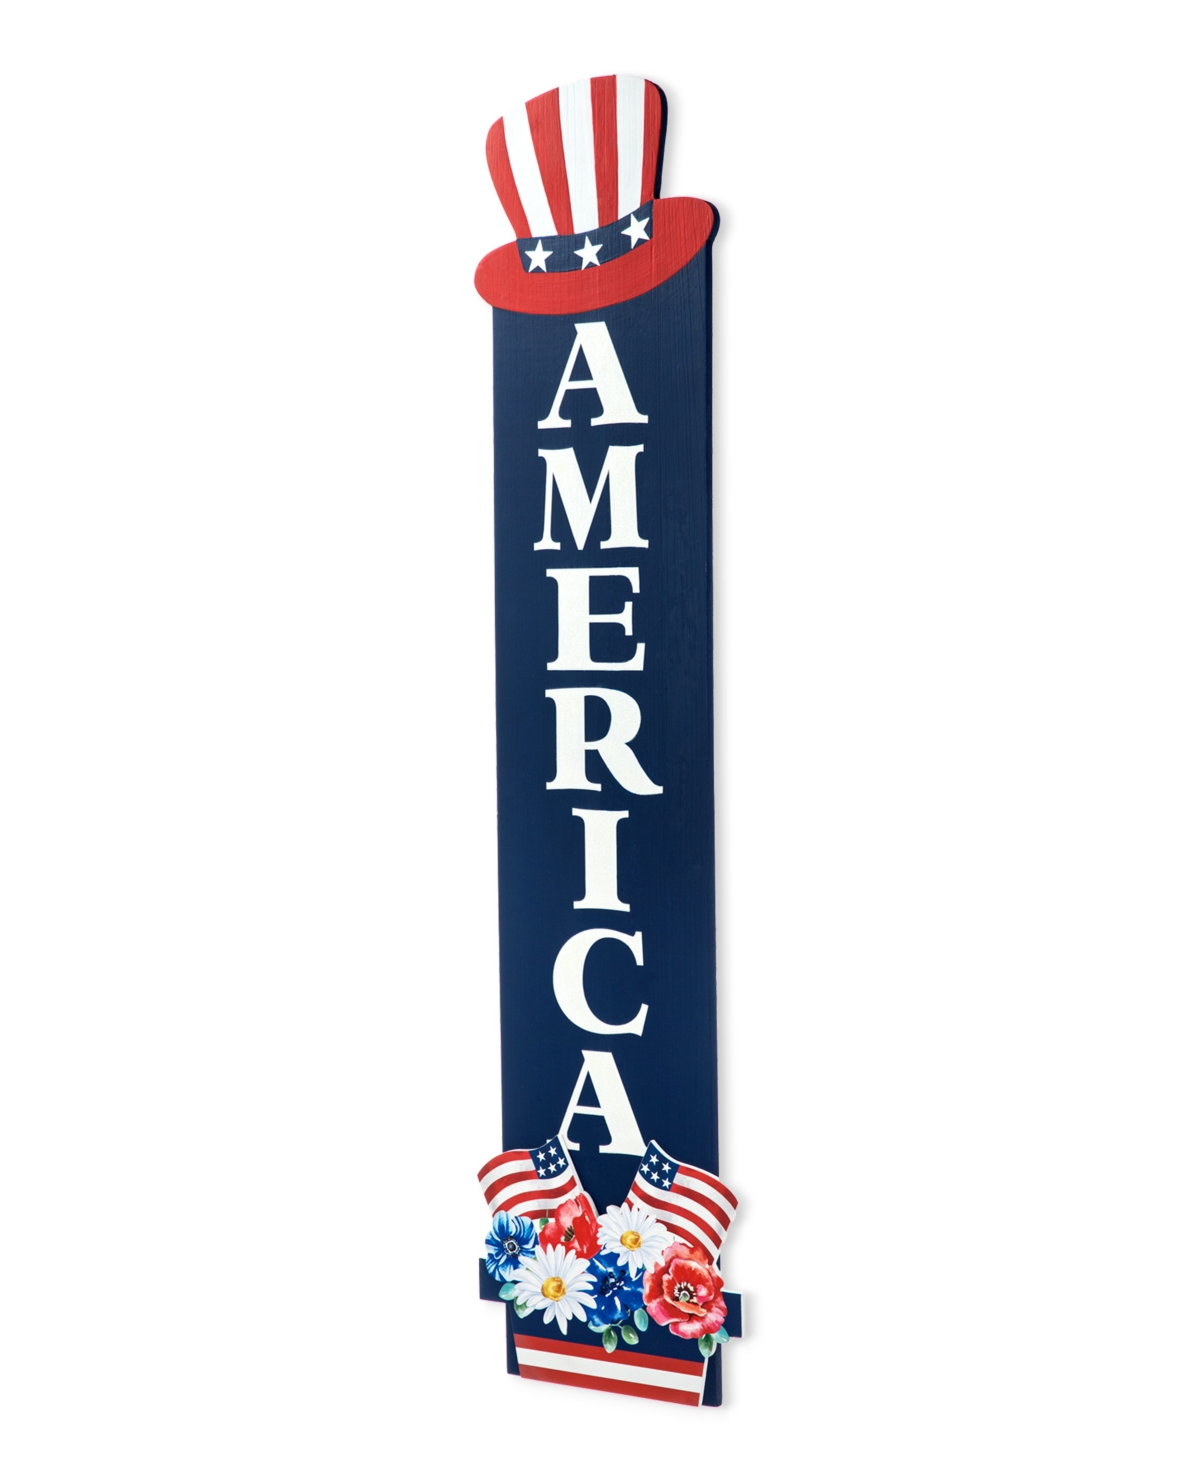 42" H Patriotic, Americana Wooden America Porch Decor - Multi